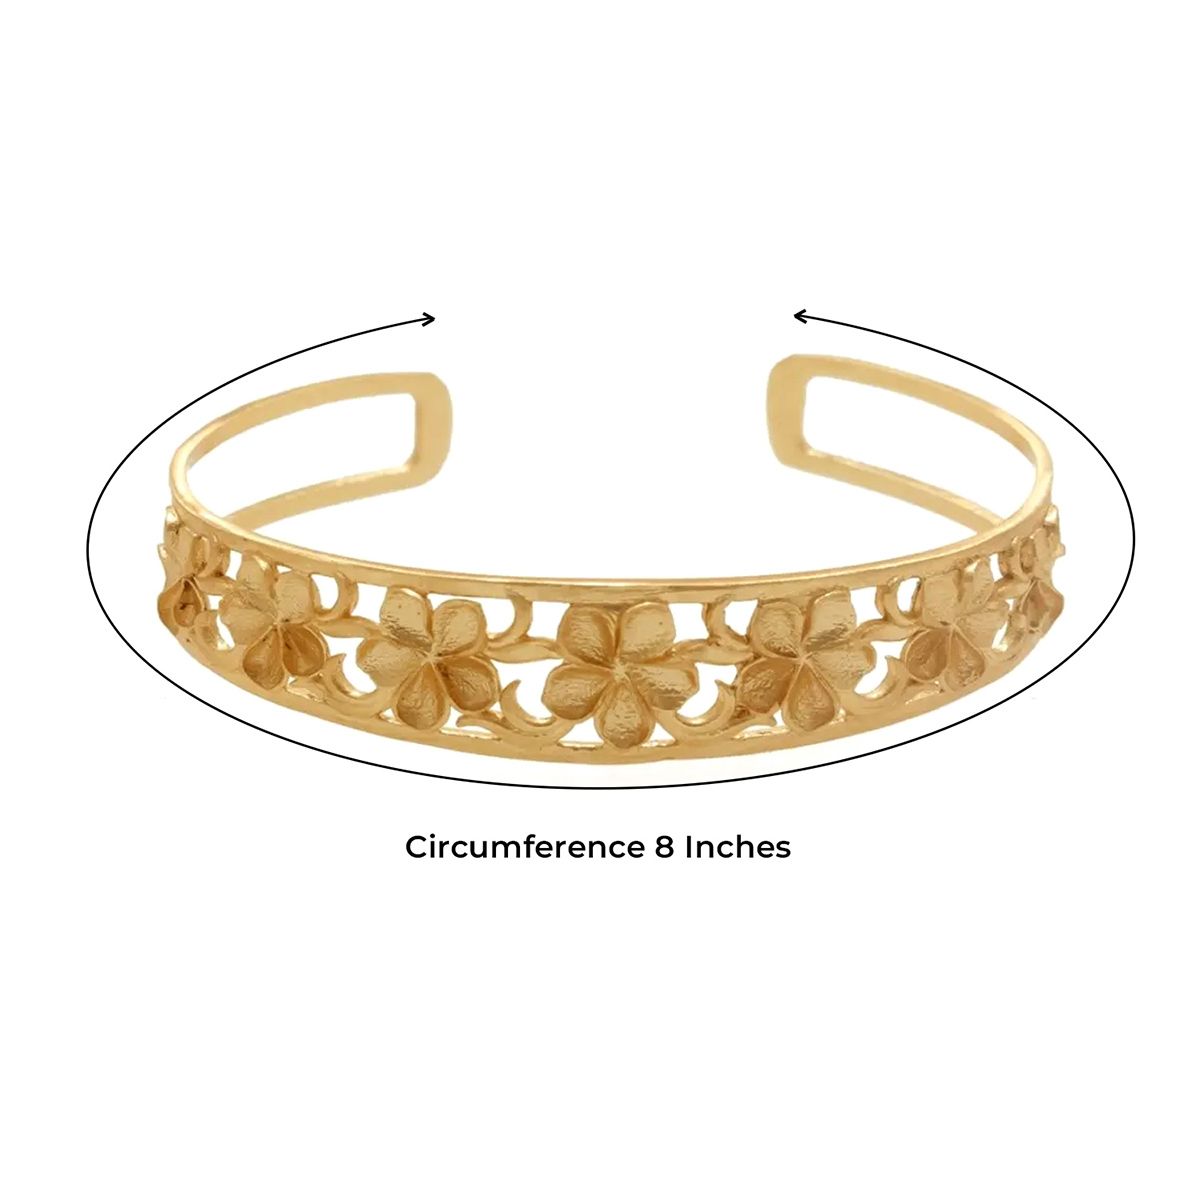 Gold-Toned Adjustable Floral Cuff Bracelet